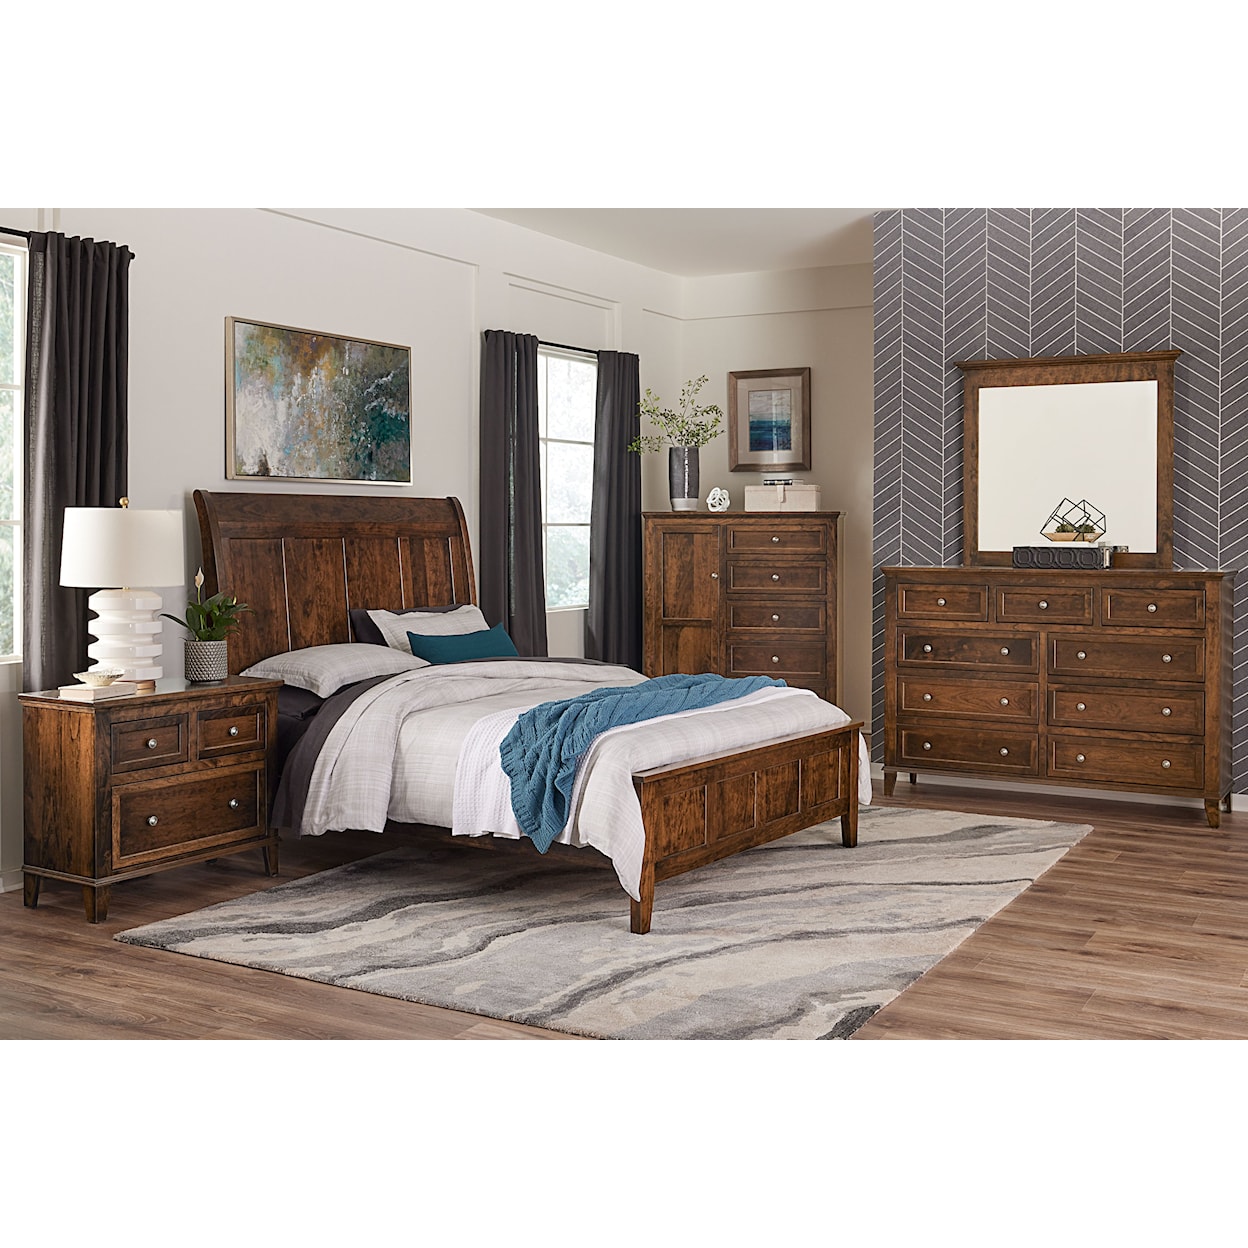 Archbold Furniture Belmont King 5-Piece Bedroom Set